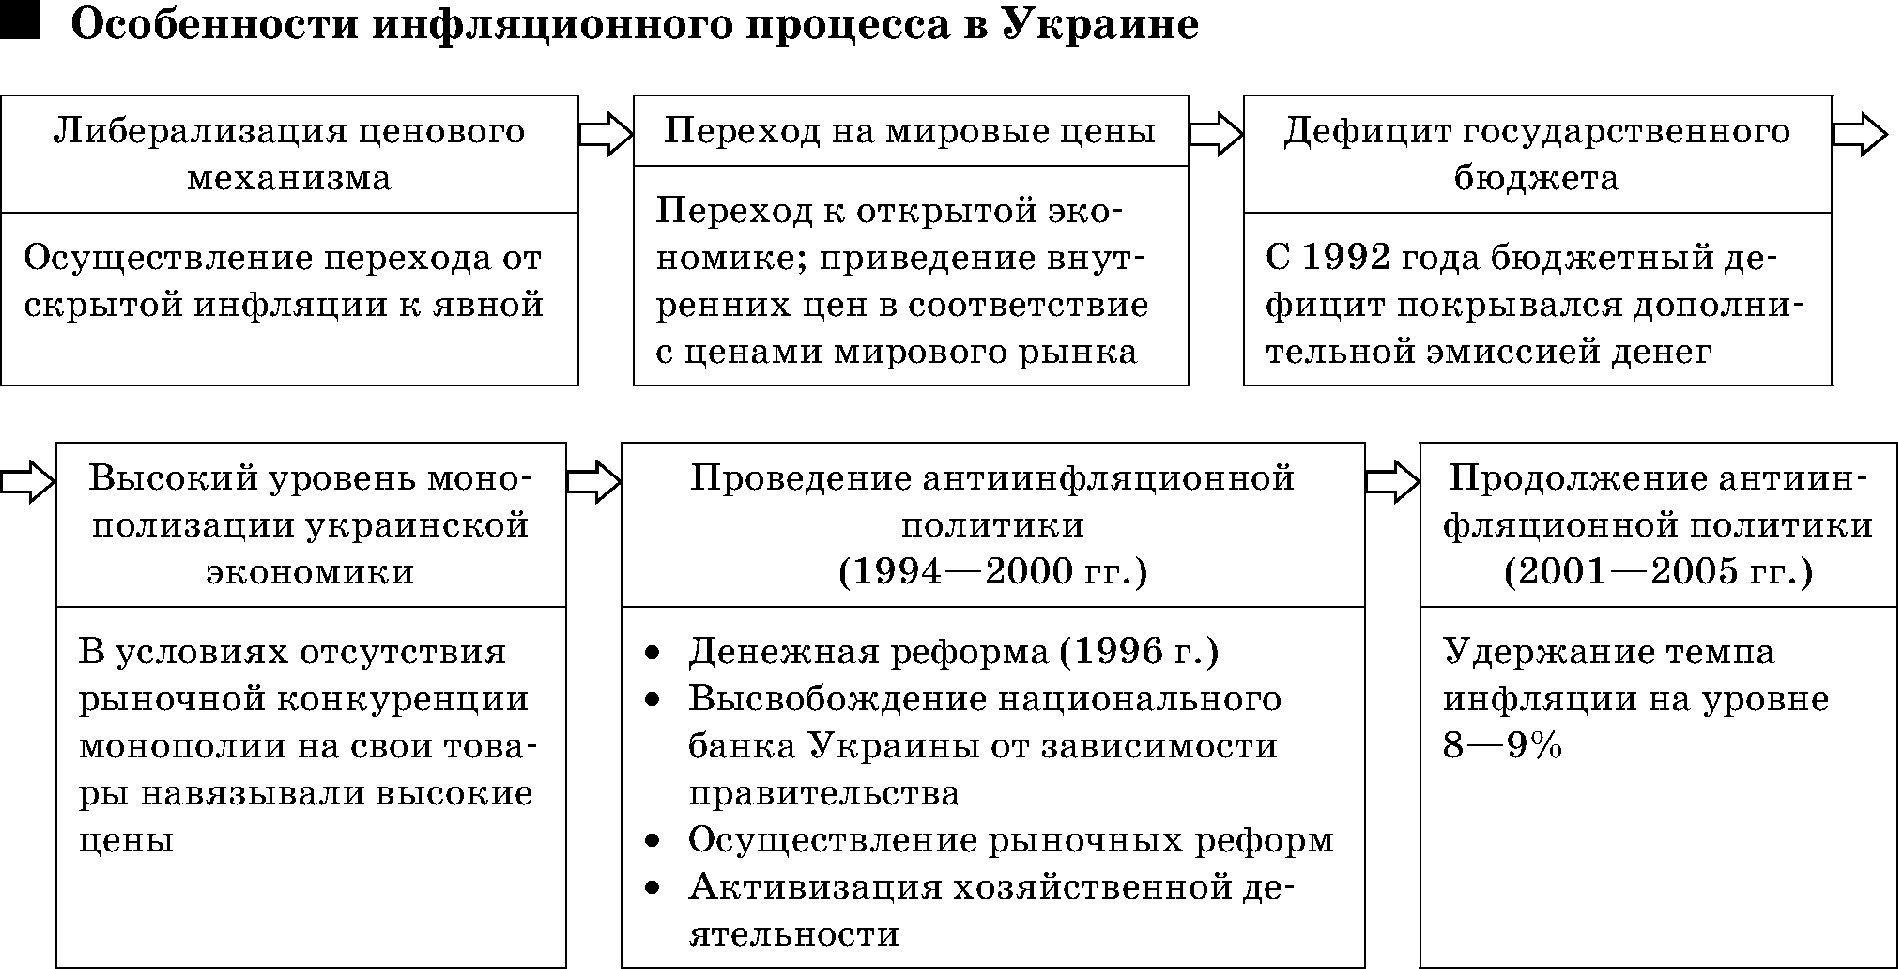 Особенности инфляционного процесса в Украине